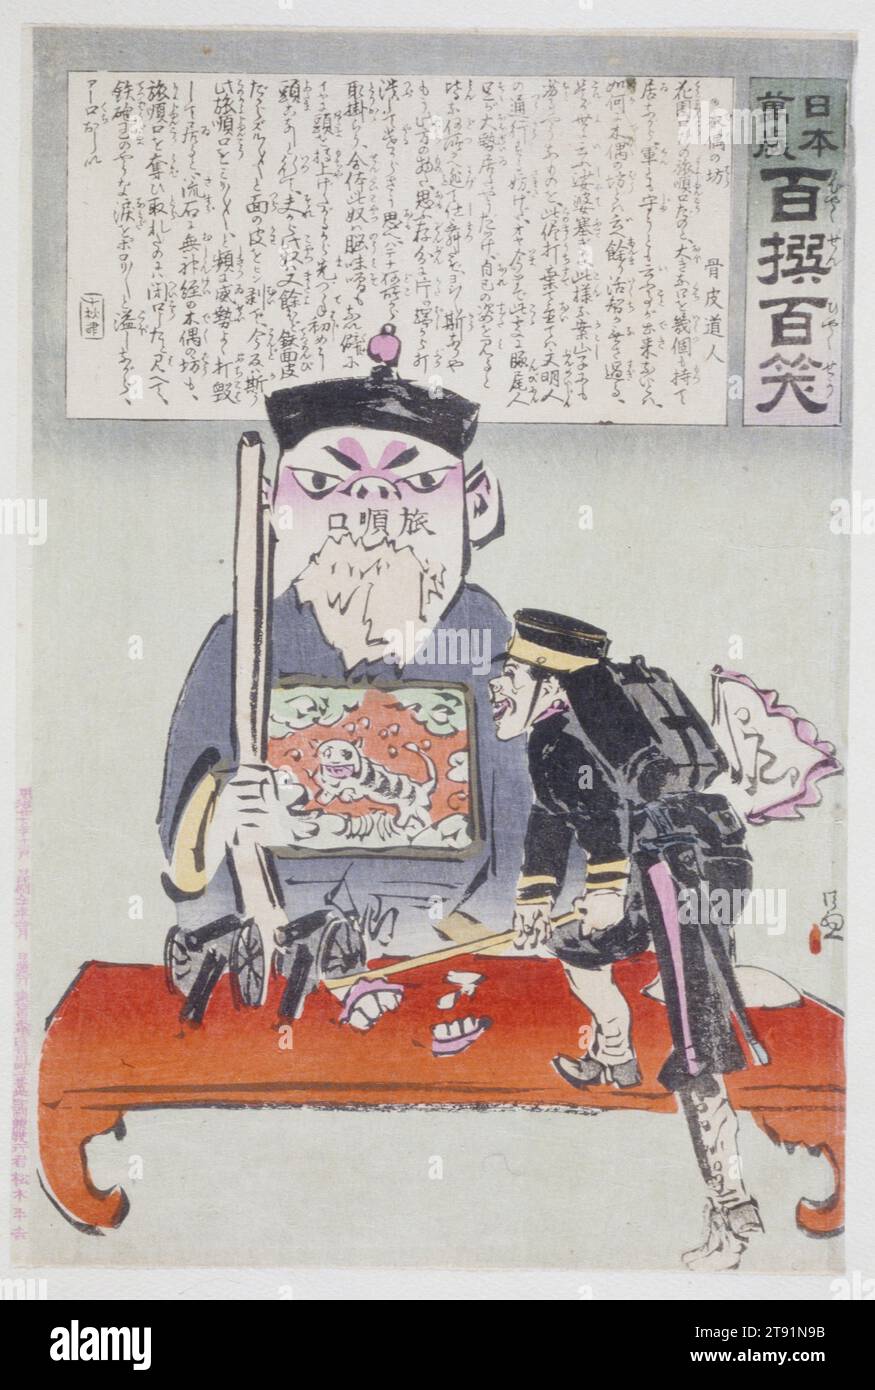 Blockhead, Dezember 1894, Kobayashi Kiyochika; Herausgeber: Daikokuya Heikichi, Japanisch 1847 - 1915, 13 7/8 x 9 3/16 Zoll (35,2 x 23,3 cm) (Bild, vertikal ōban), Holzblock-Druck (nishiki-e); Tinte und Farbe auf Papier, Japan, 19. Jahrhundert, diese Holzblock-Serie, die während des Chinesisch-Japanischen Krieges (1894-95) entstand, zeigt Kiyochikas politische Ansichten und seinen heftigen Patriotismus. Um seiner Verachtung gegenüber den Chinesen und seiner Unterstützung für die japanischen Truppen Ausdruck zu verleihen, arbeitete Kiyochika mit dem Schriftsteller Koppi Døjin zusammen. Hier wird der Comic-Text des Schreibers in einem Feld im oberen Teil des Drucks angezeigt. Stockfoto